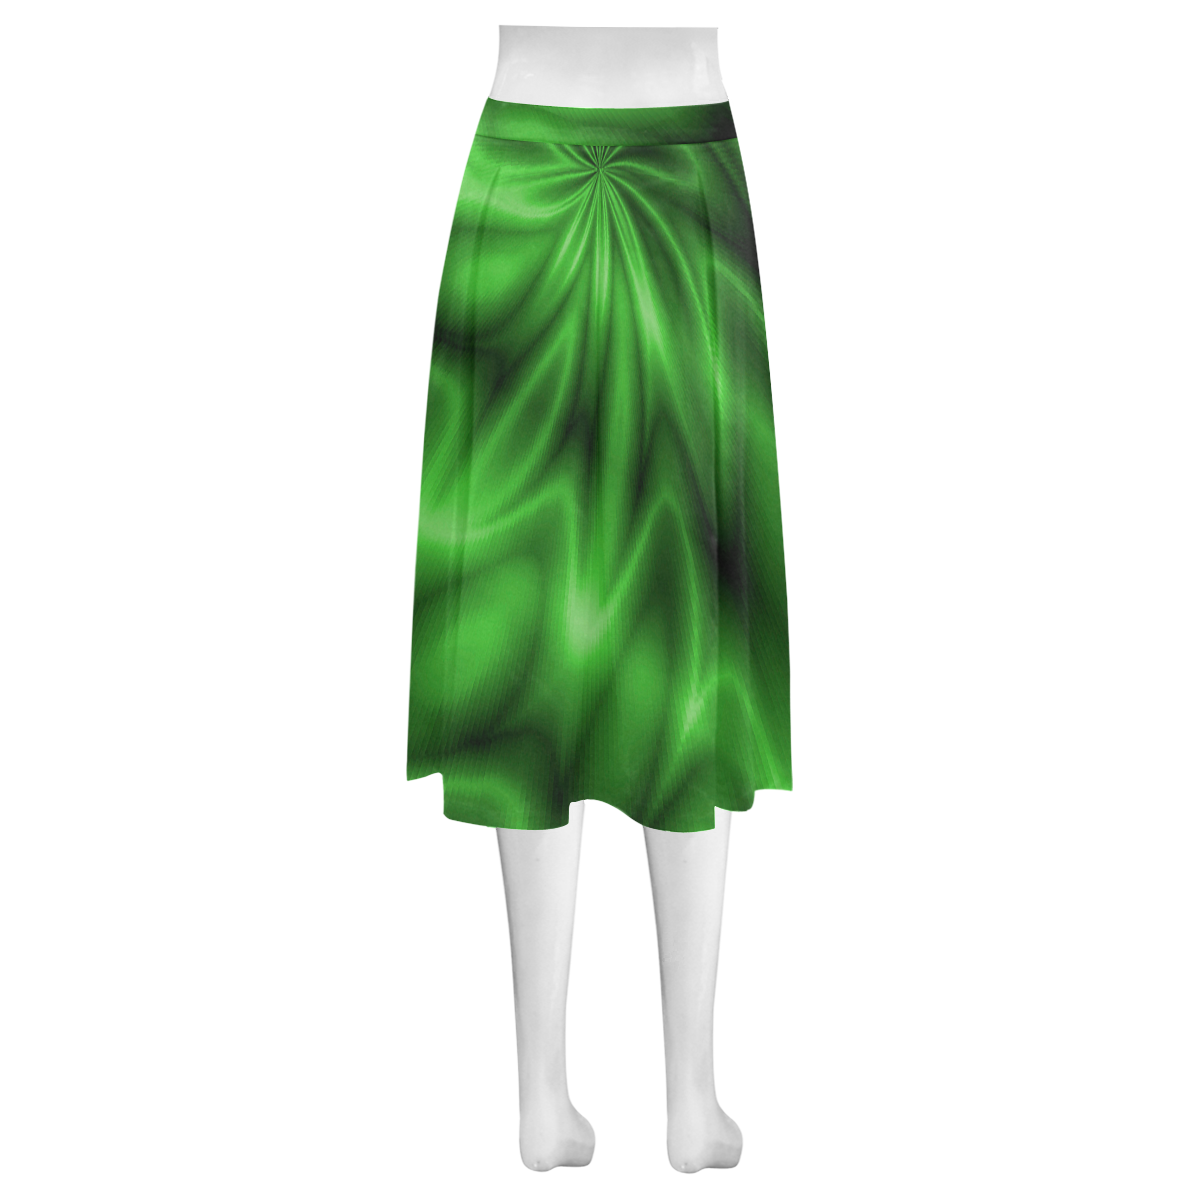 Green Shiny Swirl Mnemosyne Women's Crepe Skirt (Model D16)